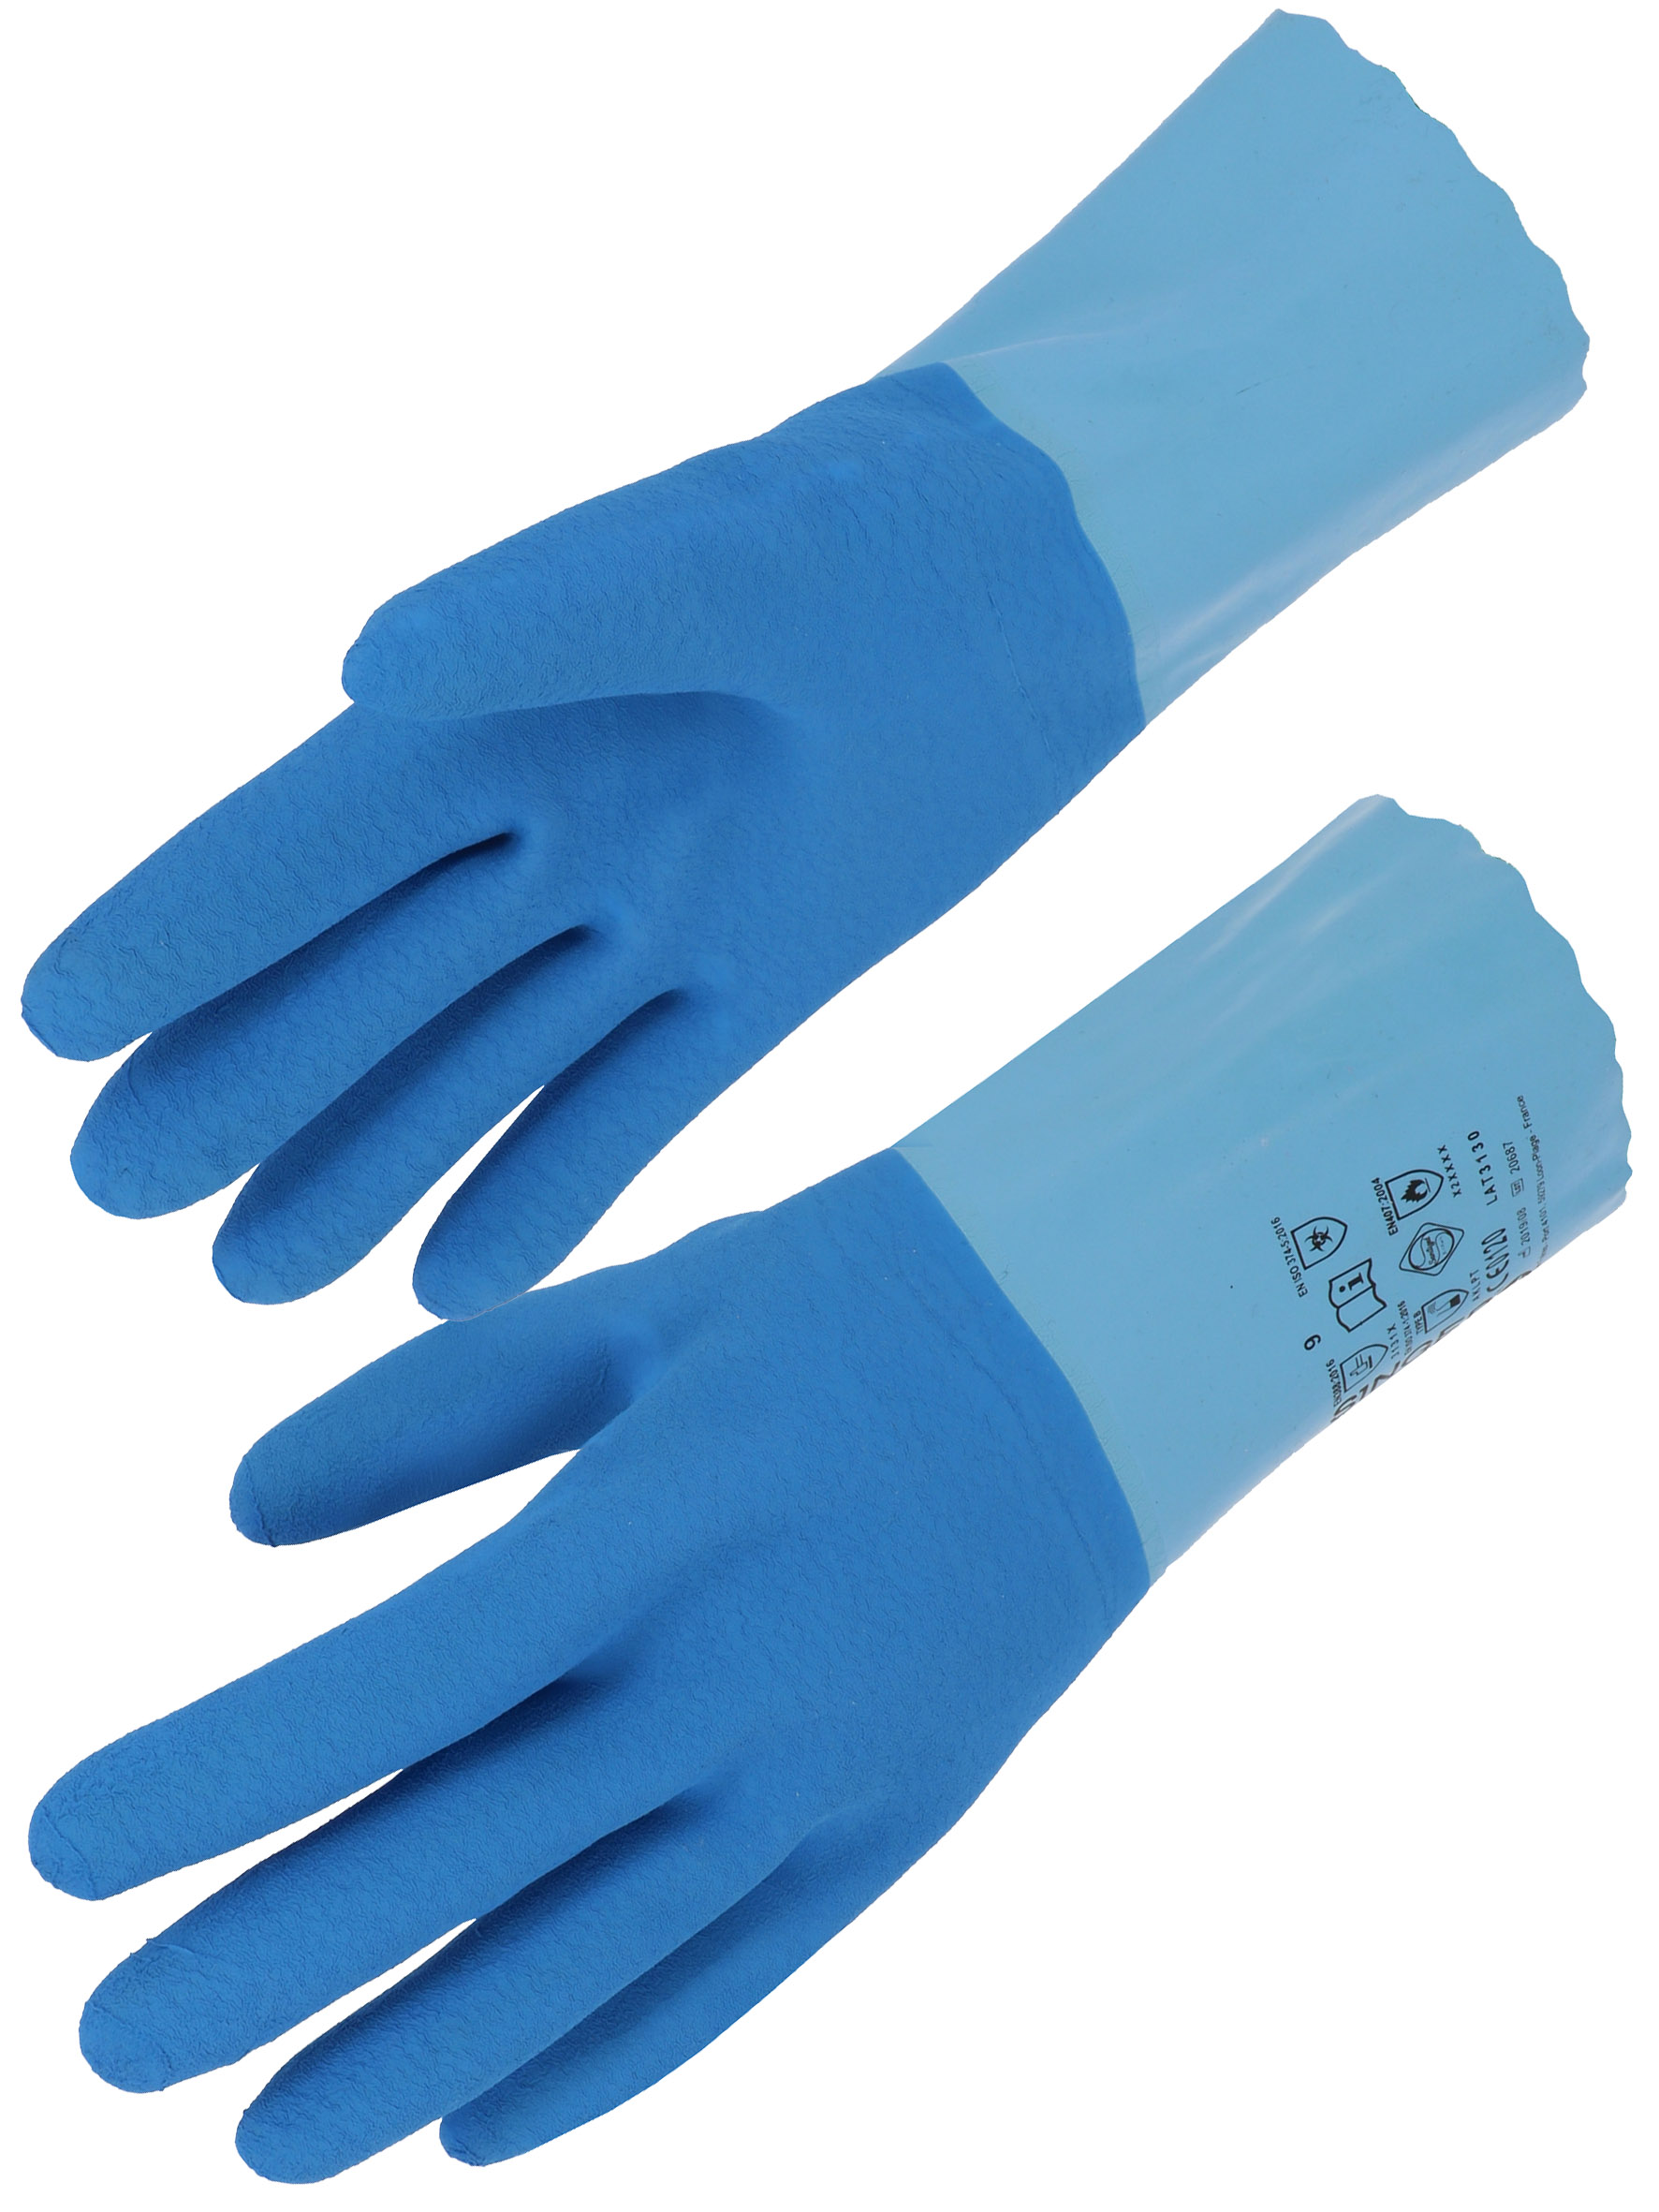 Gant latex main adhérisé bicolore bleu sur jersey coton - Taille XL